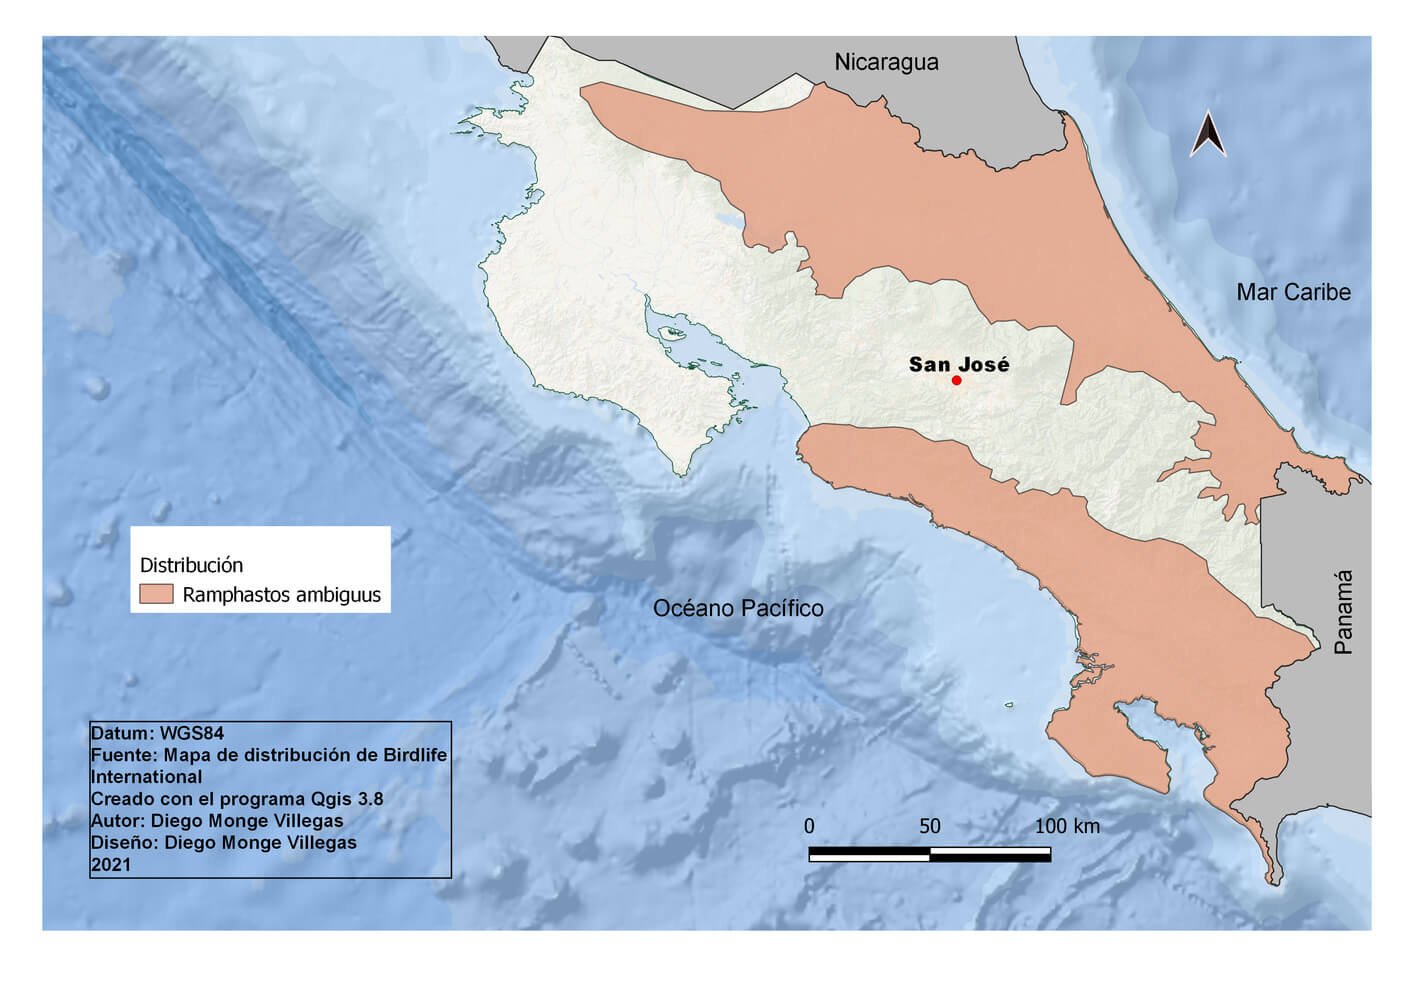 Distribución del tucán pico castaño, Ramphastos ambiguus